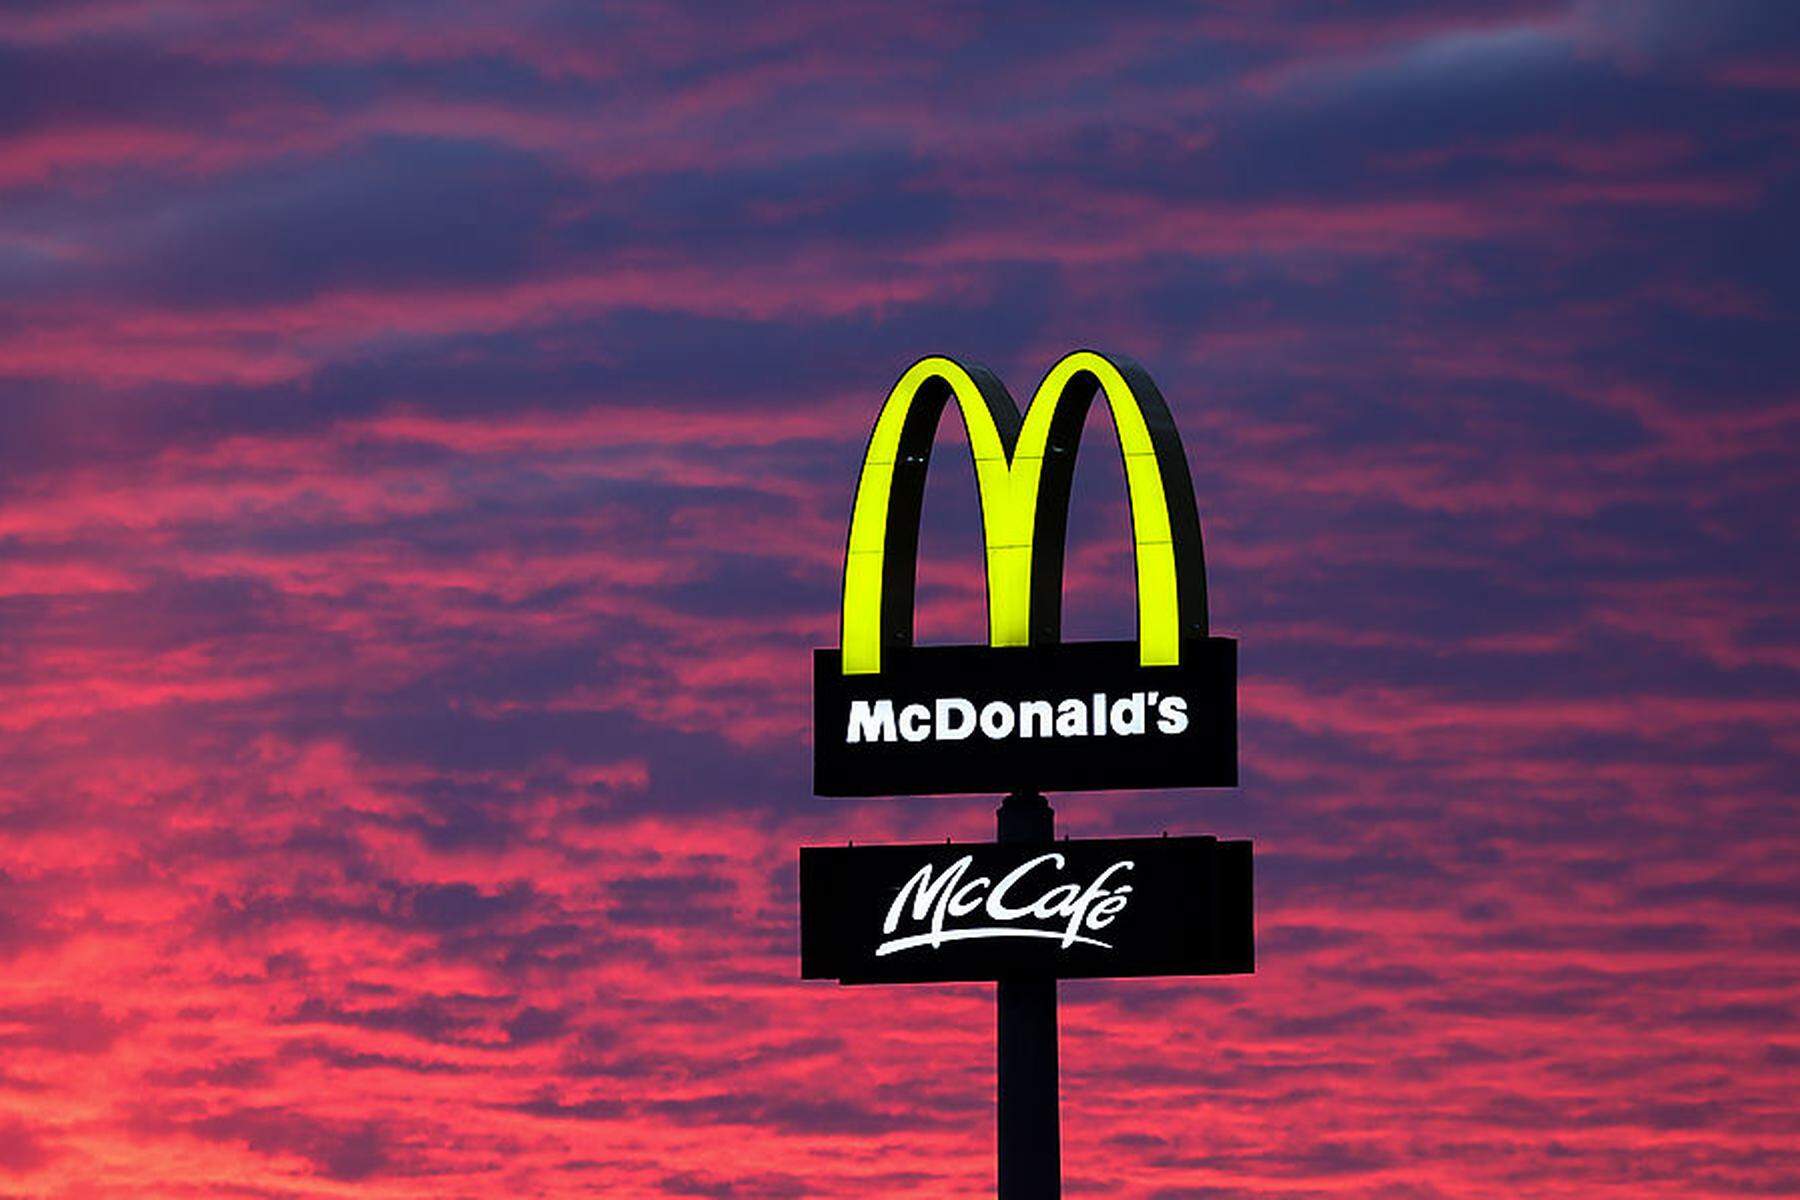 Schnellrestaurant-Kette : KI soll in Zukunft Bestellungen bei McDonald‘s annehmen